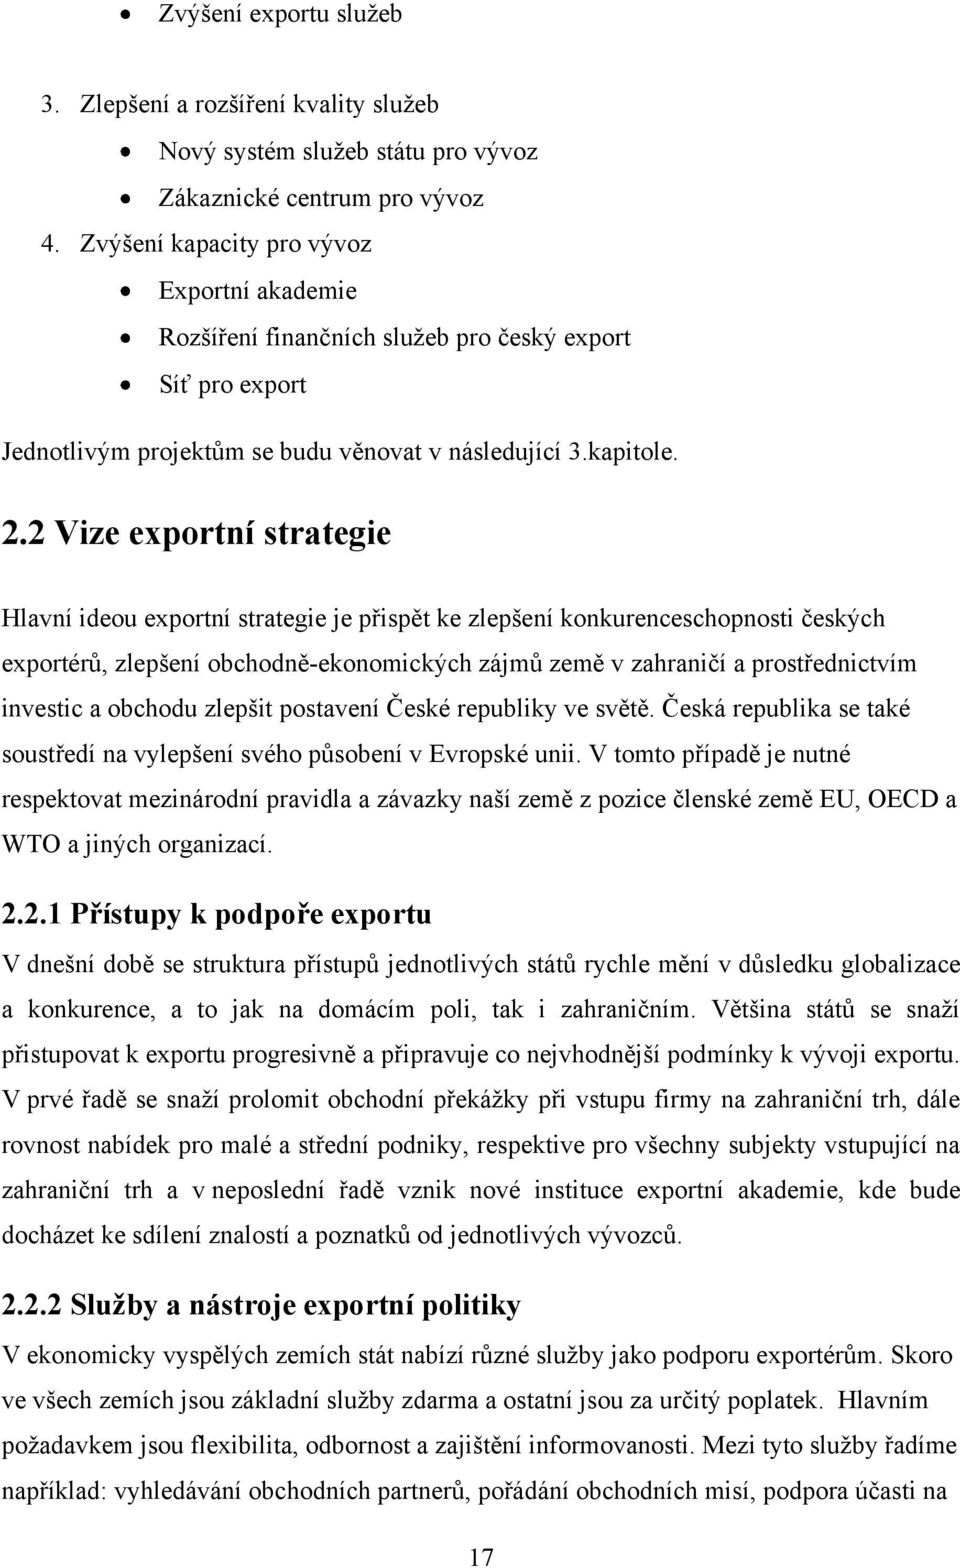 2 Vize exportní strategie Hlavní ideou exportní strategie je přispět ke zlepšení konkurenceschopnosti českých exportérů, zlepšení obchodně-ekonomických zájmů země v zahraničí a prostřednictvím